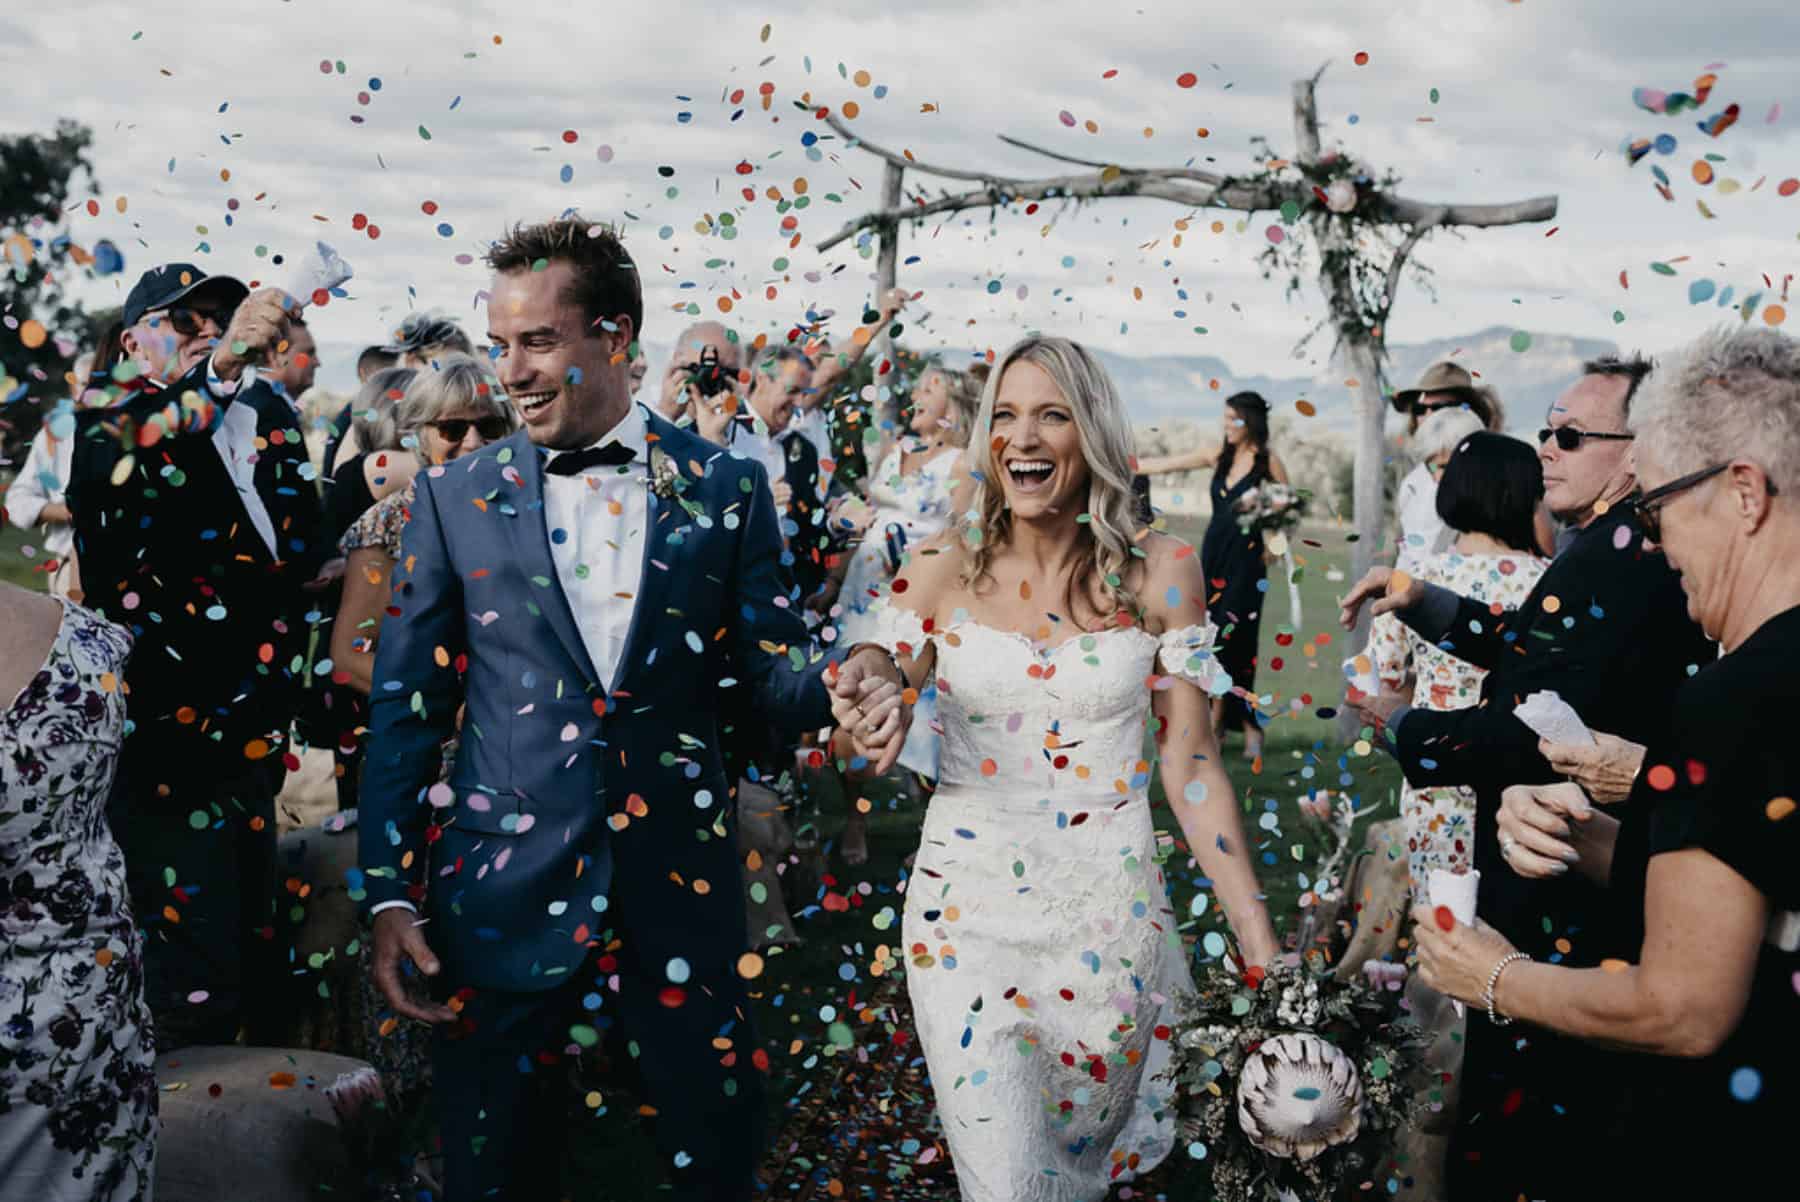 Top 10 weddings of 2017 | Kate & Blake’s Three Day Wed Fest